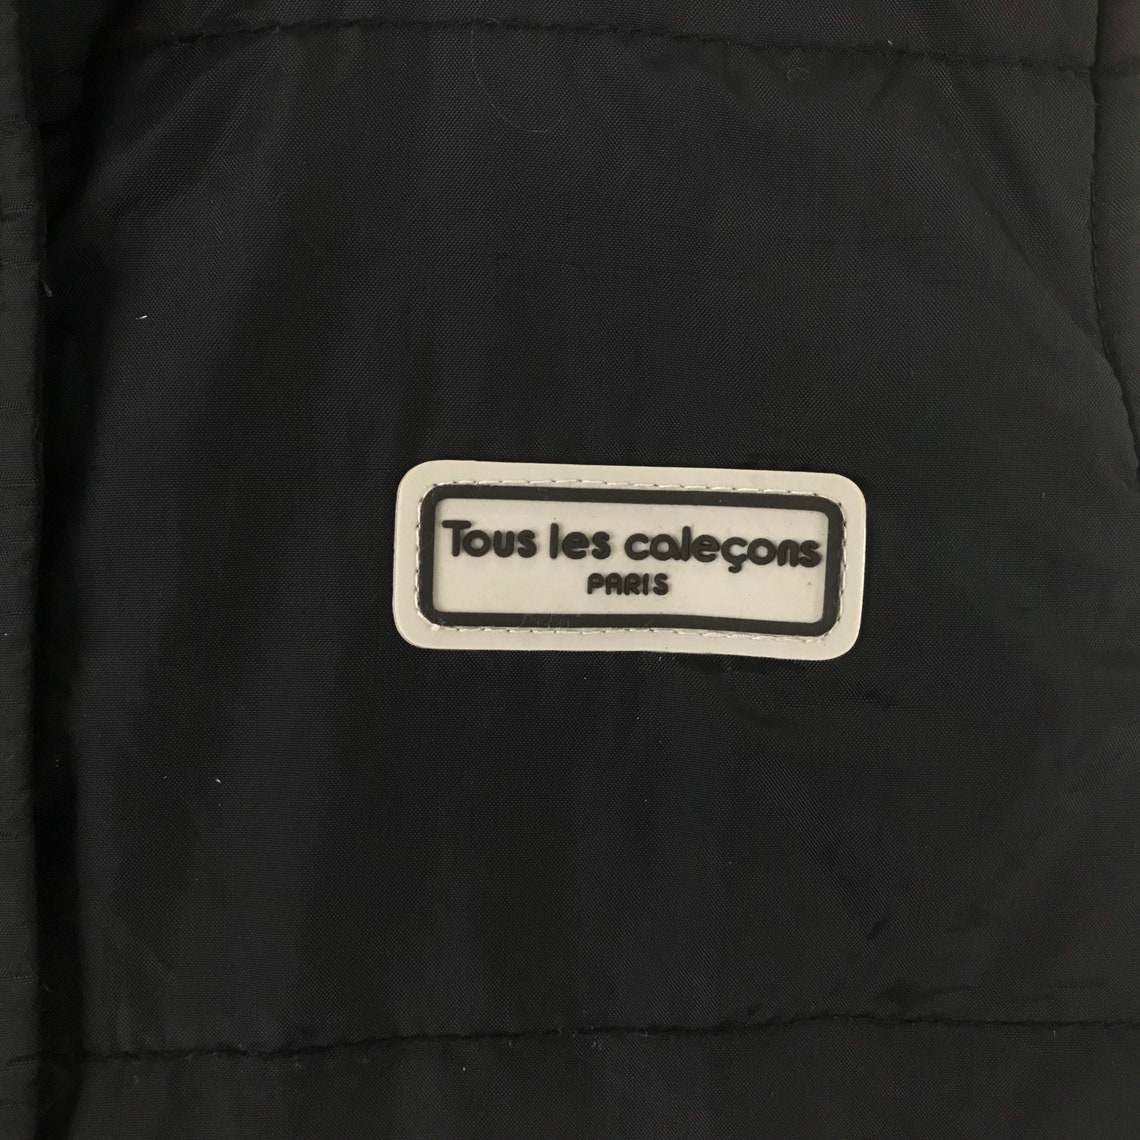 Vintage Tous Les Calecons Paris Black Colour Smaller Size Vest | Etsy